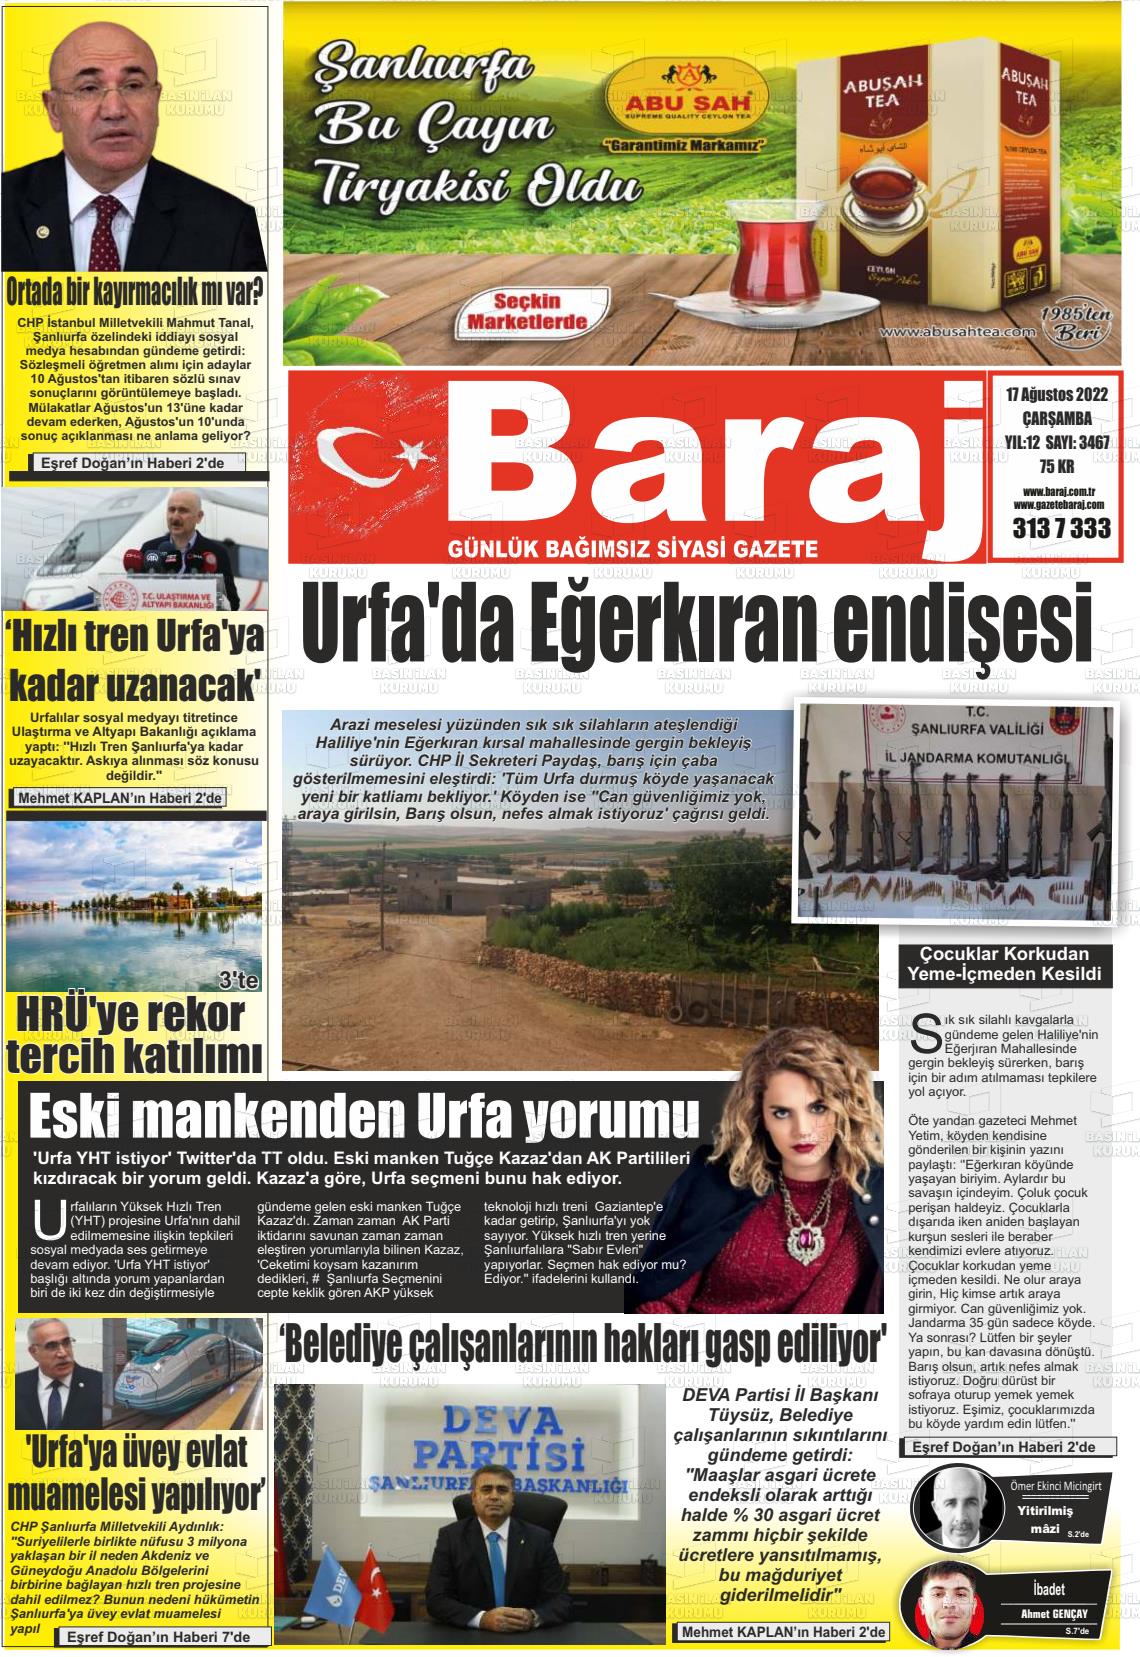 17 Ağustos 2022 Baraj Gazete Manşeti